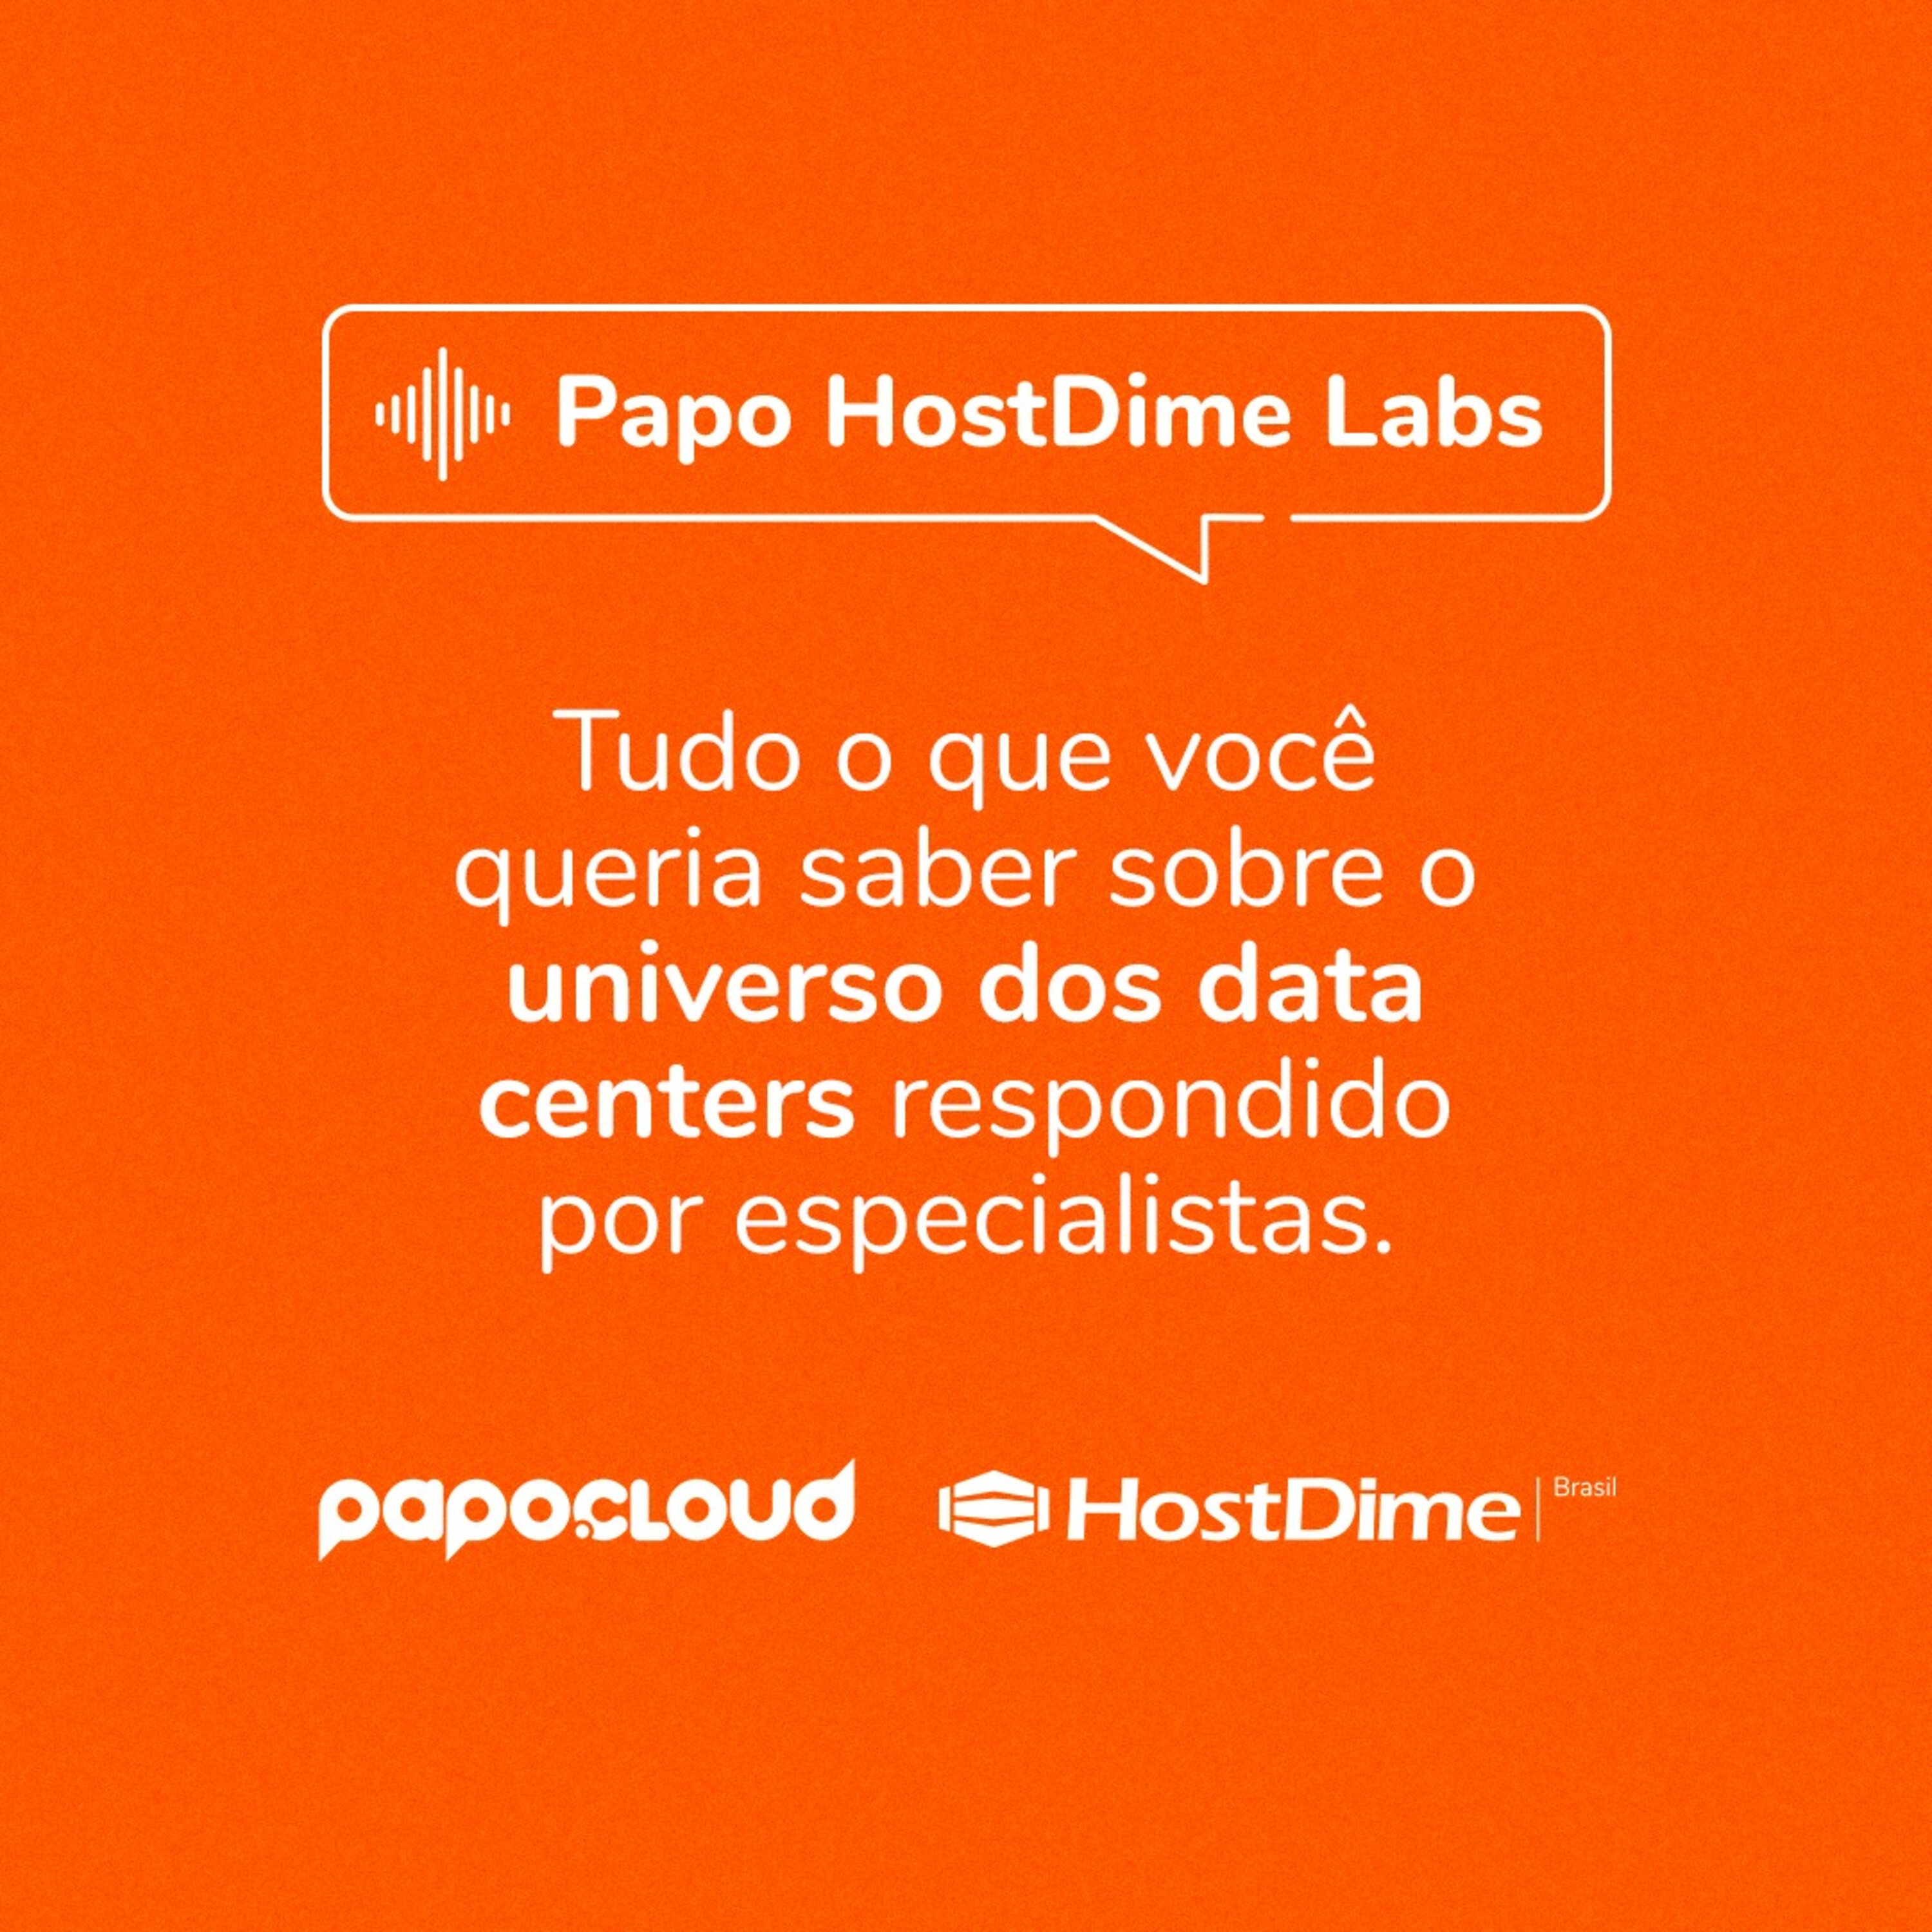 Papo HostDime Labs